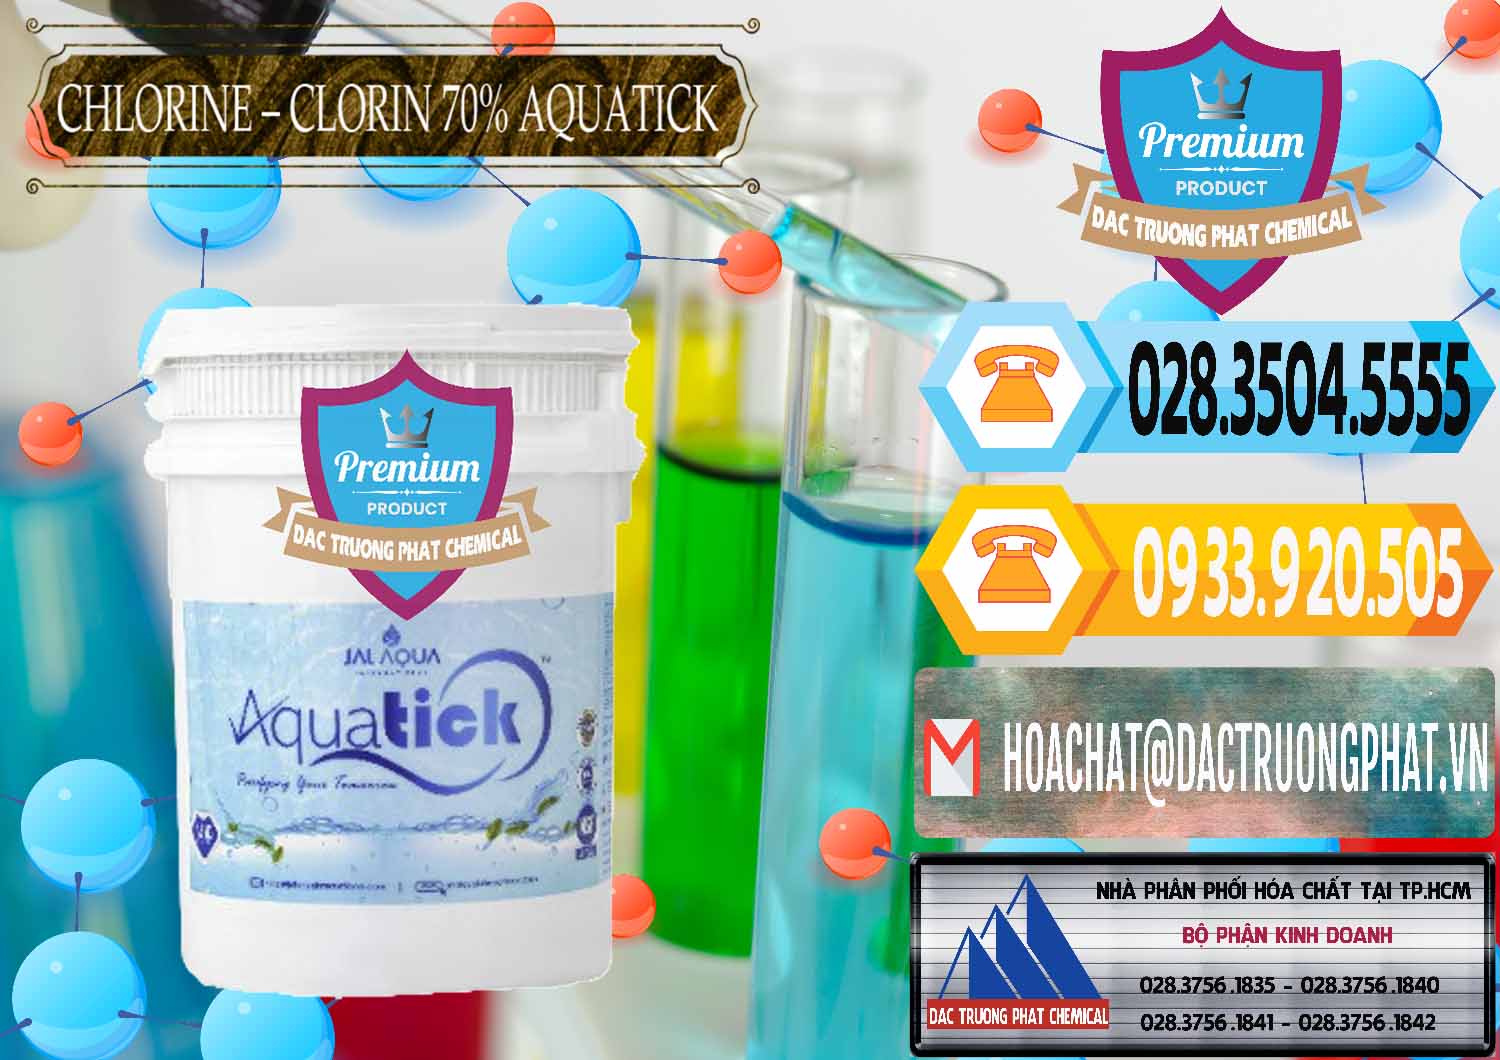 Cty chuyên bán - cung cấp Chlorine – Clorin 70% Aquatick Thùng Cao Jal Aqua Ấn Độ India - 0237 - Đơn vị kinh doanh - cung cấp hóa chất tại TP.HCM - hoachattayrua.net